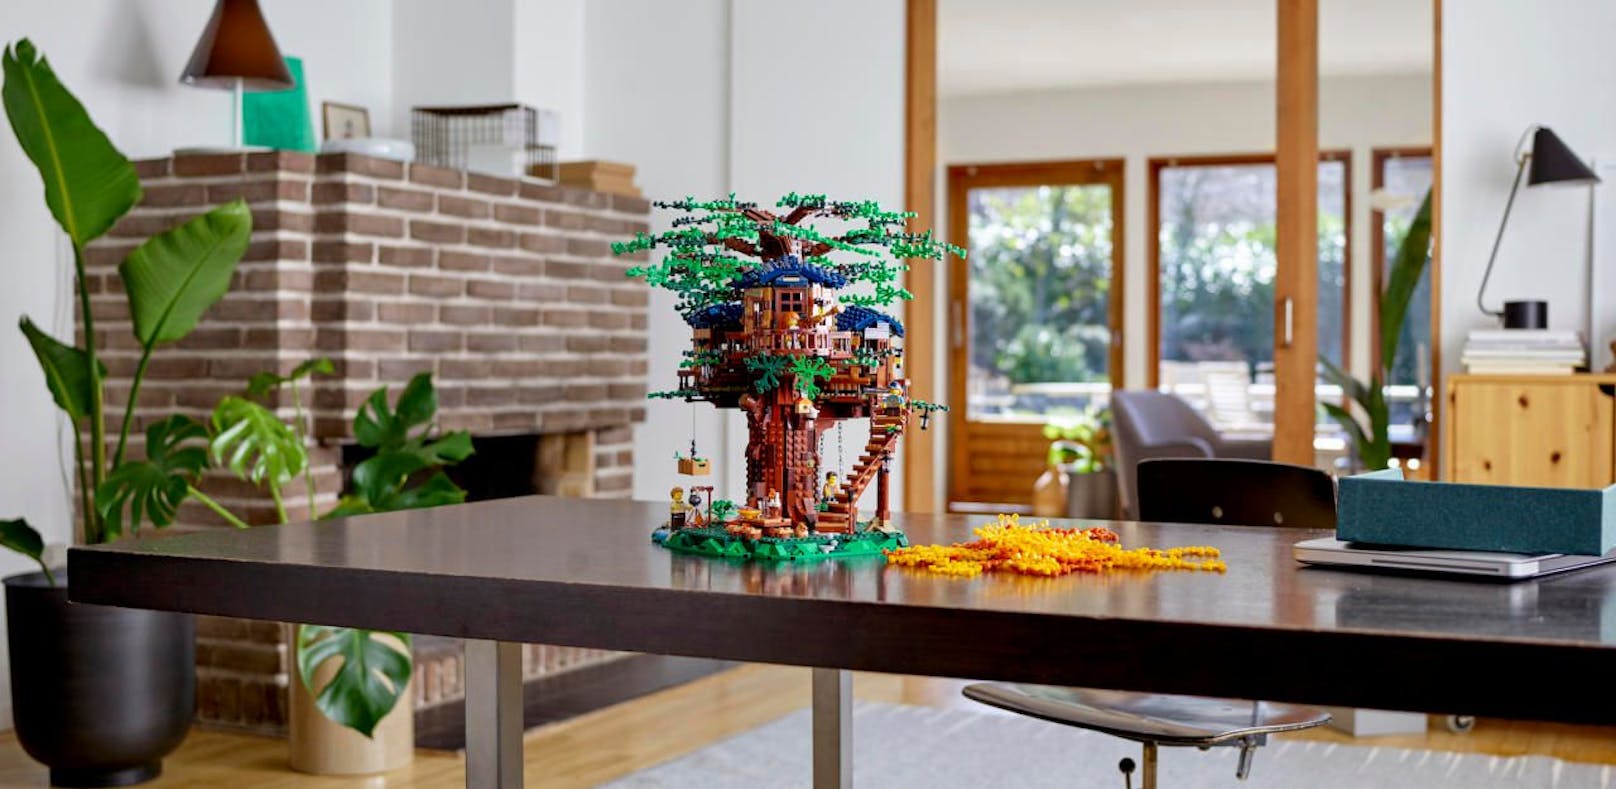 Lego beeindruckt Fans mit detailreichem Baumhaus